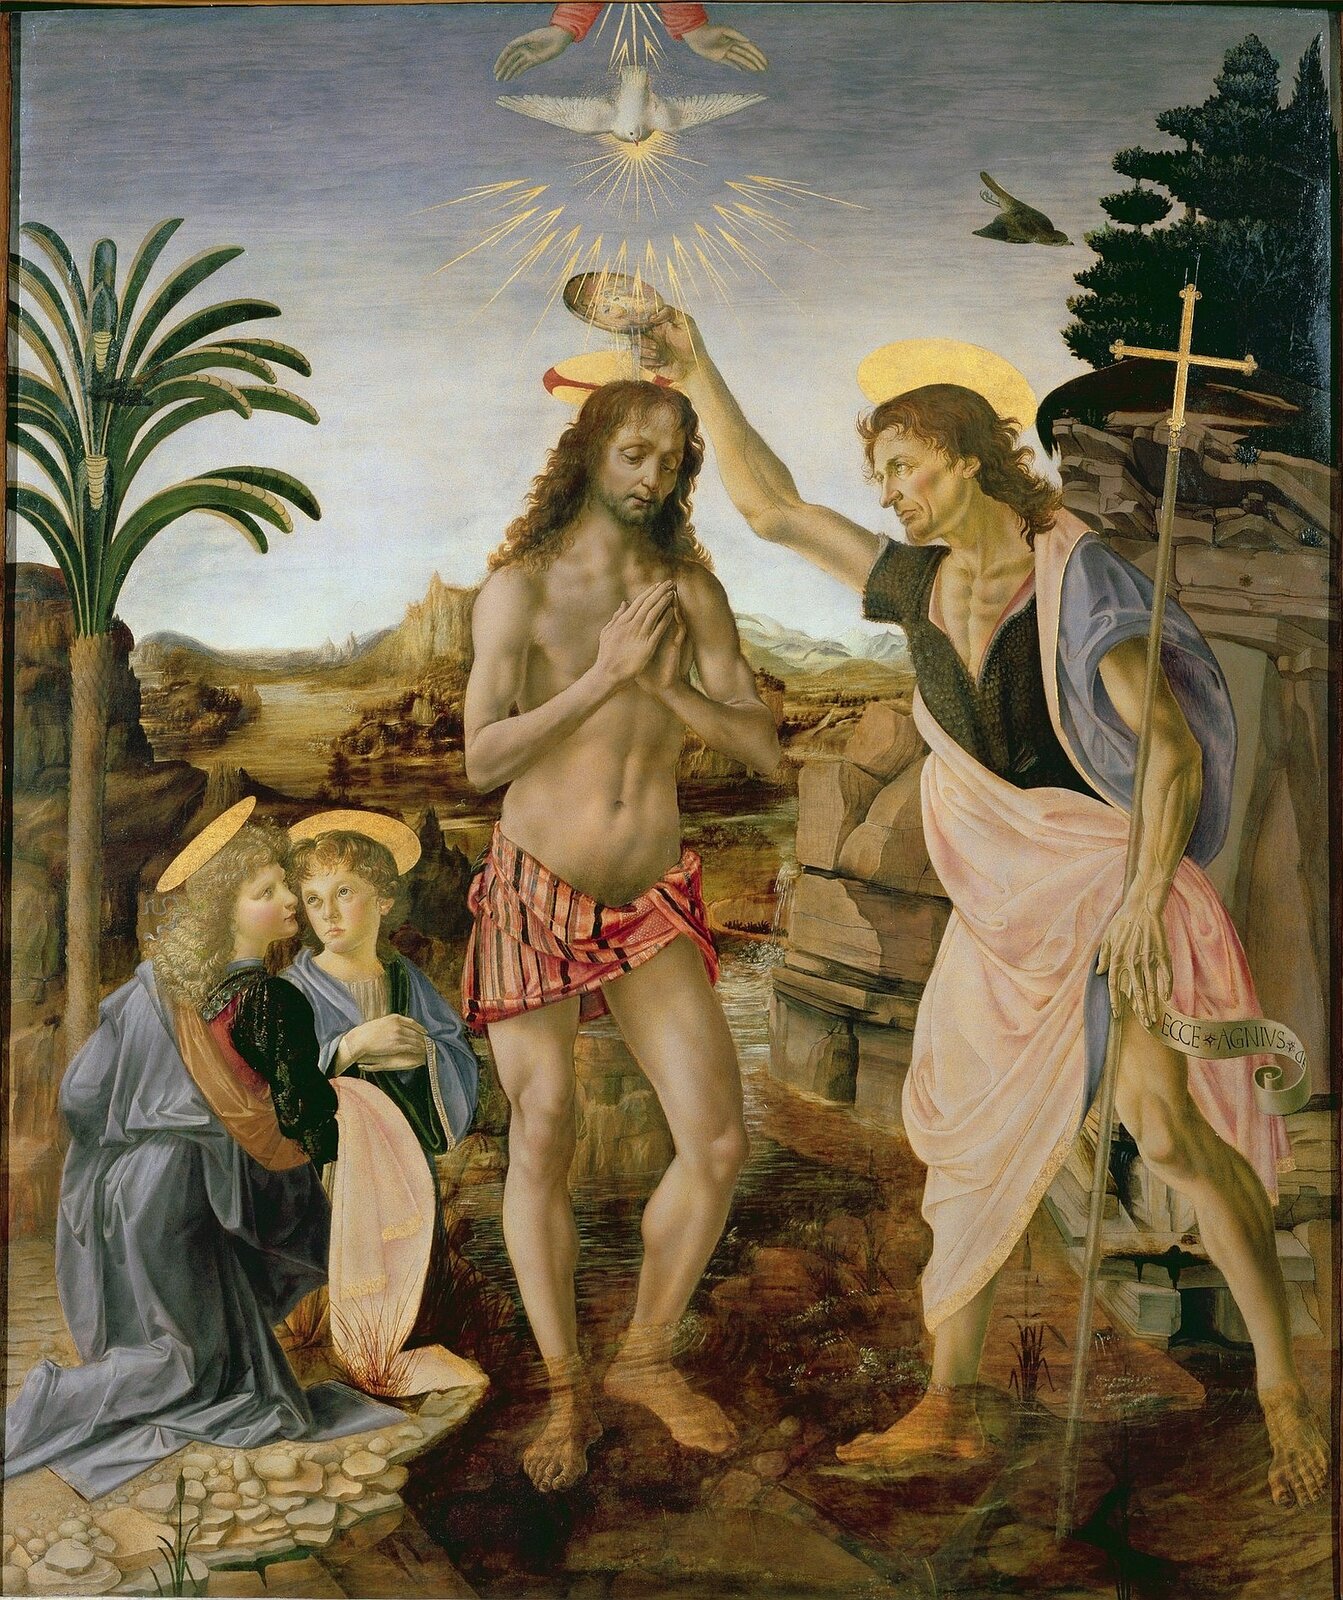 Ilustracja przedstawia obraz „Chrzest Chrystusa” Verrocchia o kształcie pionowego prostokąta, namalowany z udziałem Leonarda da Vinci. Dzieło przedstawia scenę religijną, pośrodku znajduje się Chrystus ze złożonymi rękoma, nad nim Duch Święty oraz ręce Boga. Z prawej strony stoi Jan Chrzciciel, trzyma w lewej dłoni krzyż, a prawą polewa głowę Zbawiciela wodą z Jordanu. Z lewej strony klęczą dwa anioły. Scena ukazana jest na tle pejzażu z palmą po lewej stronie i skałą po prawej oraz pogodnym niebem.  